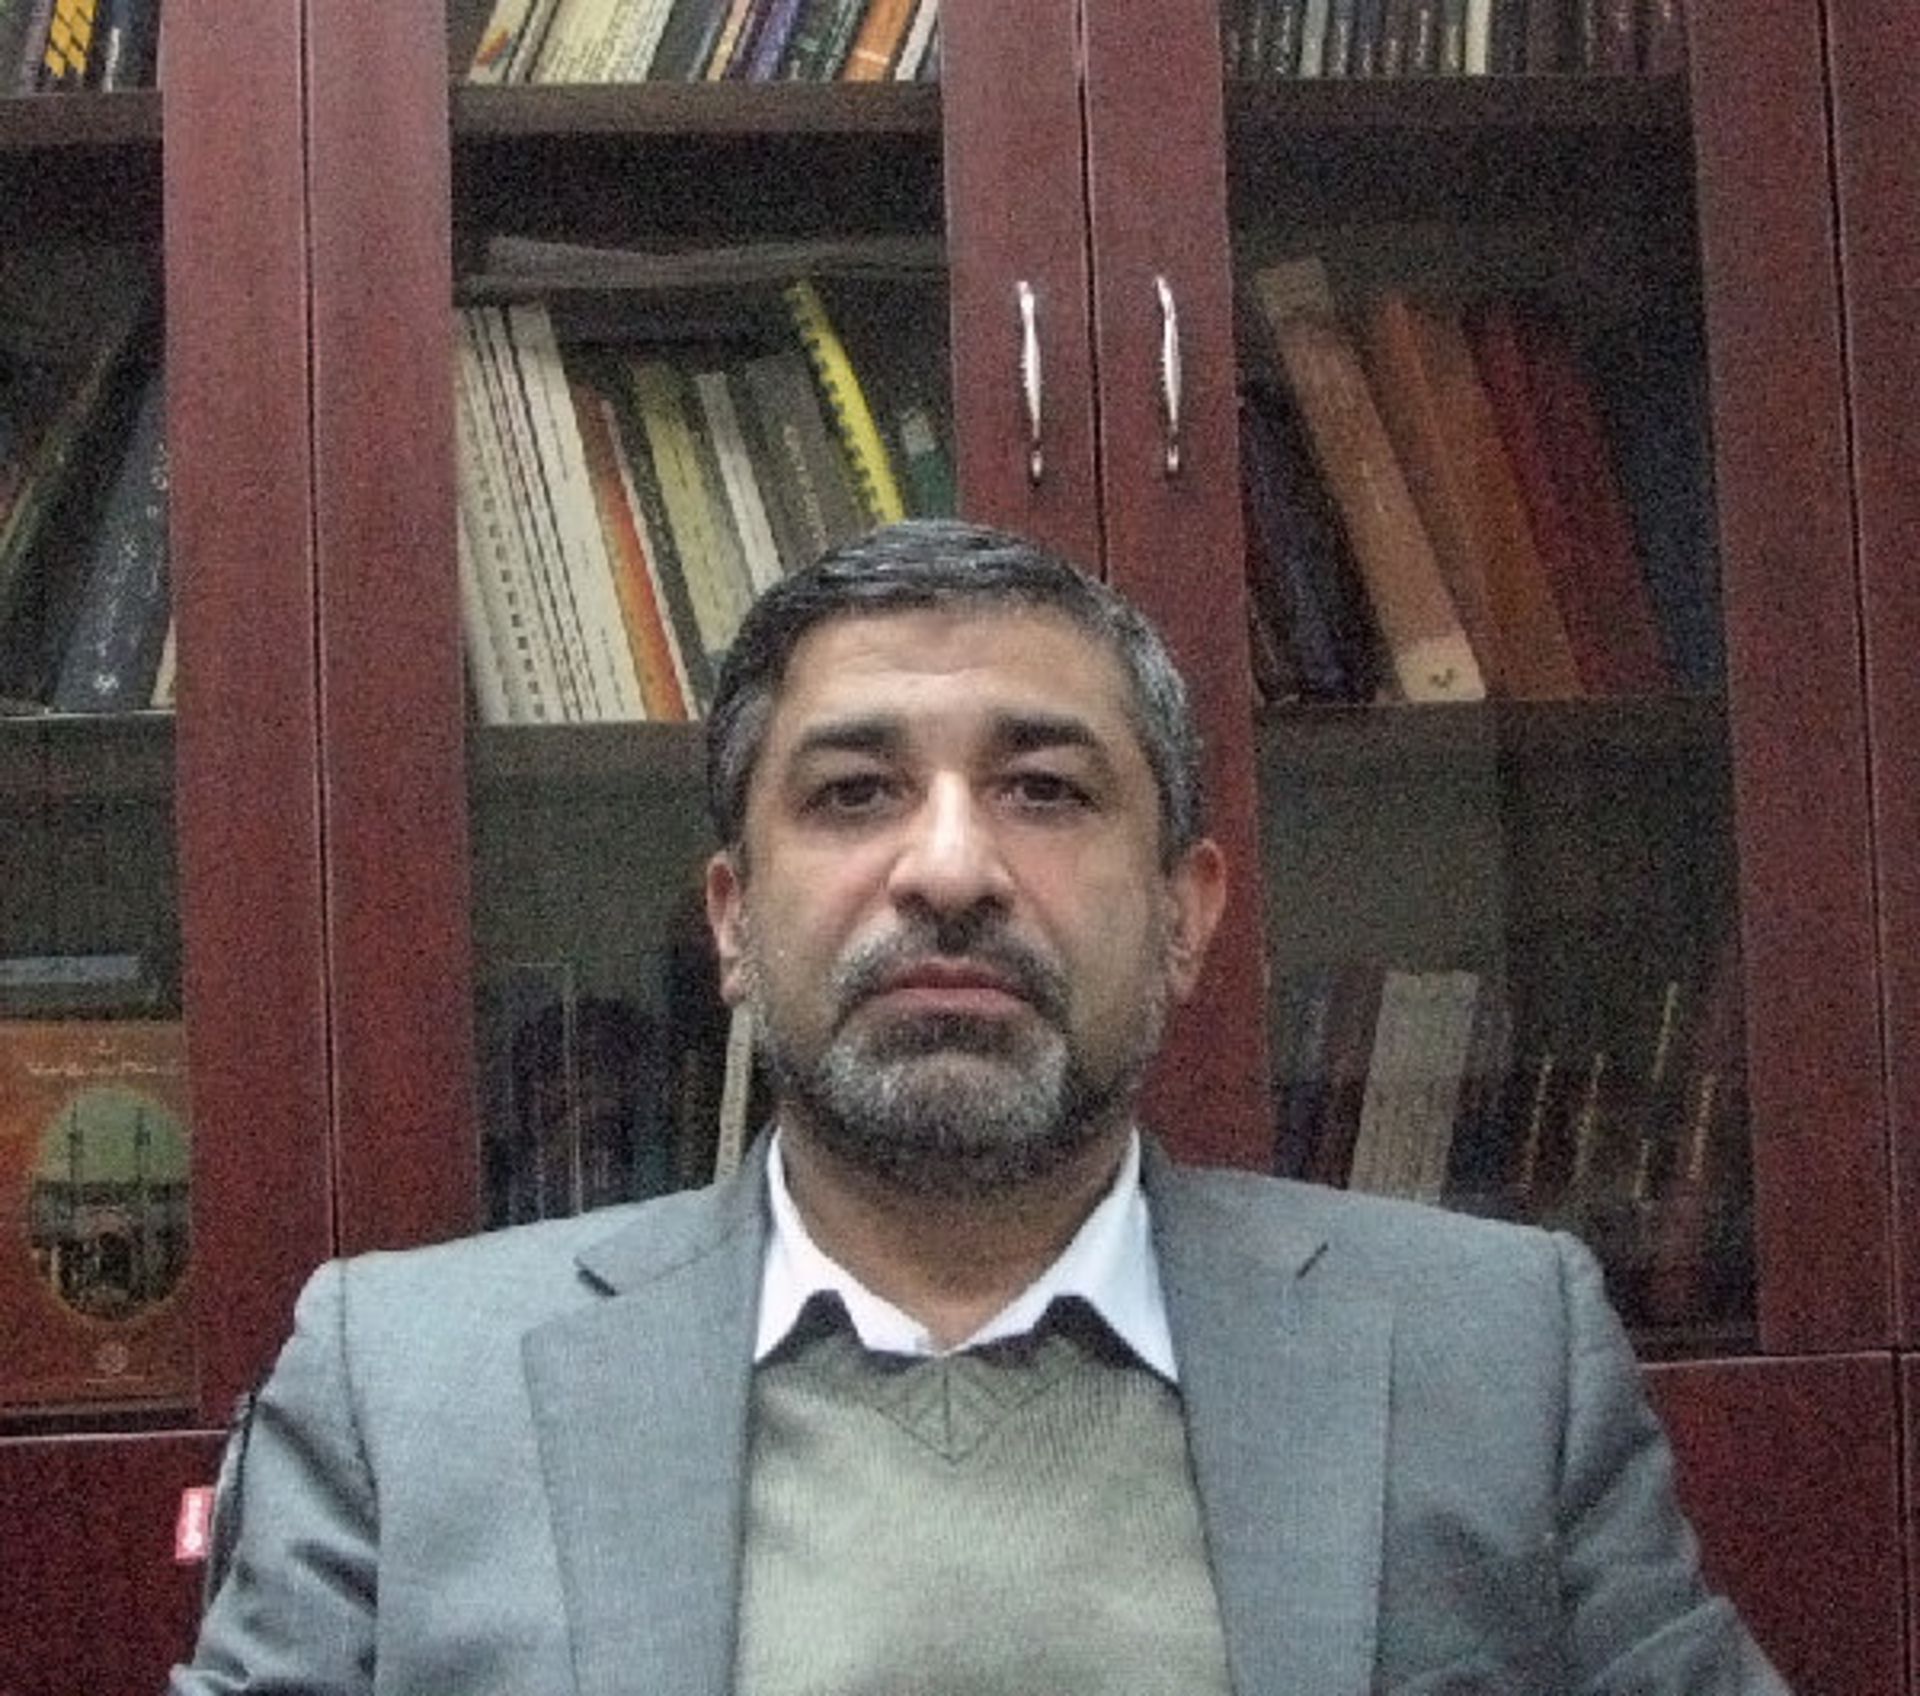 دکتر علی ایرانمنش